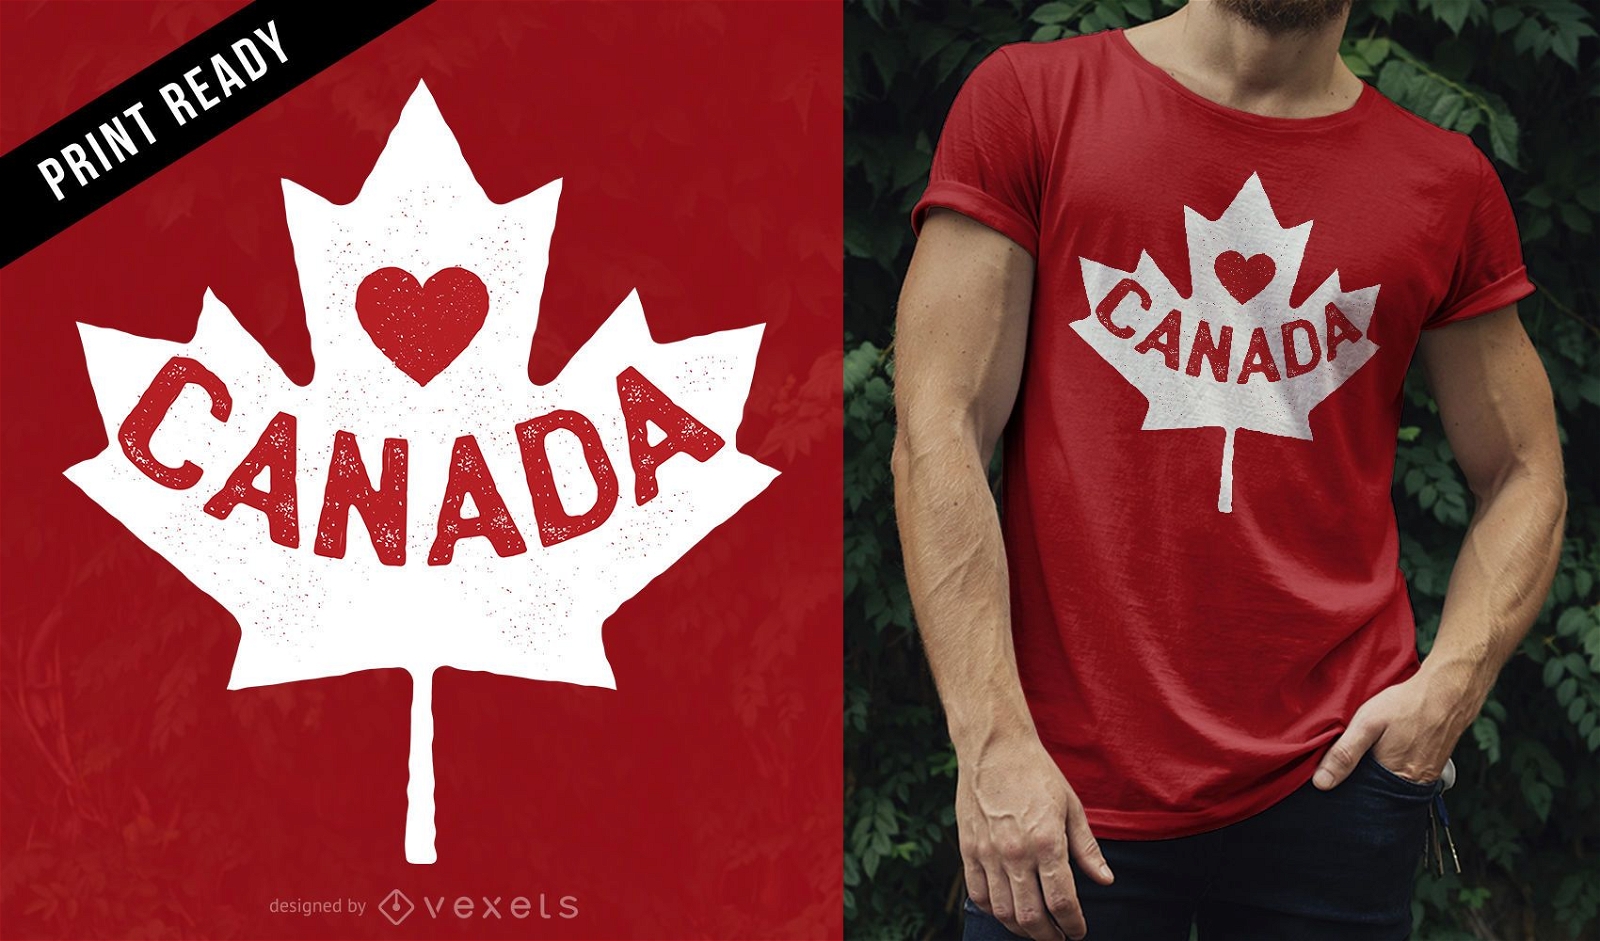 Adoro o design de camisetas do Canadá